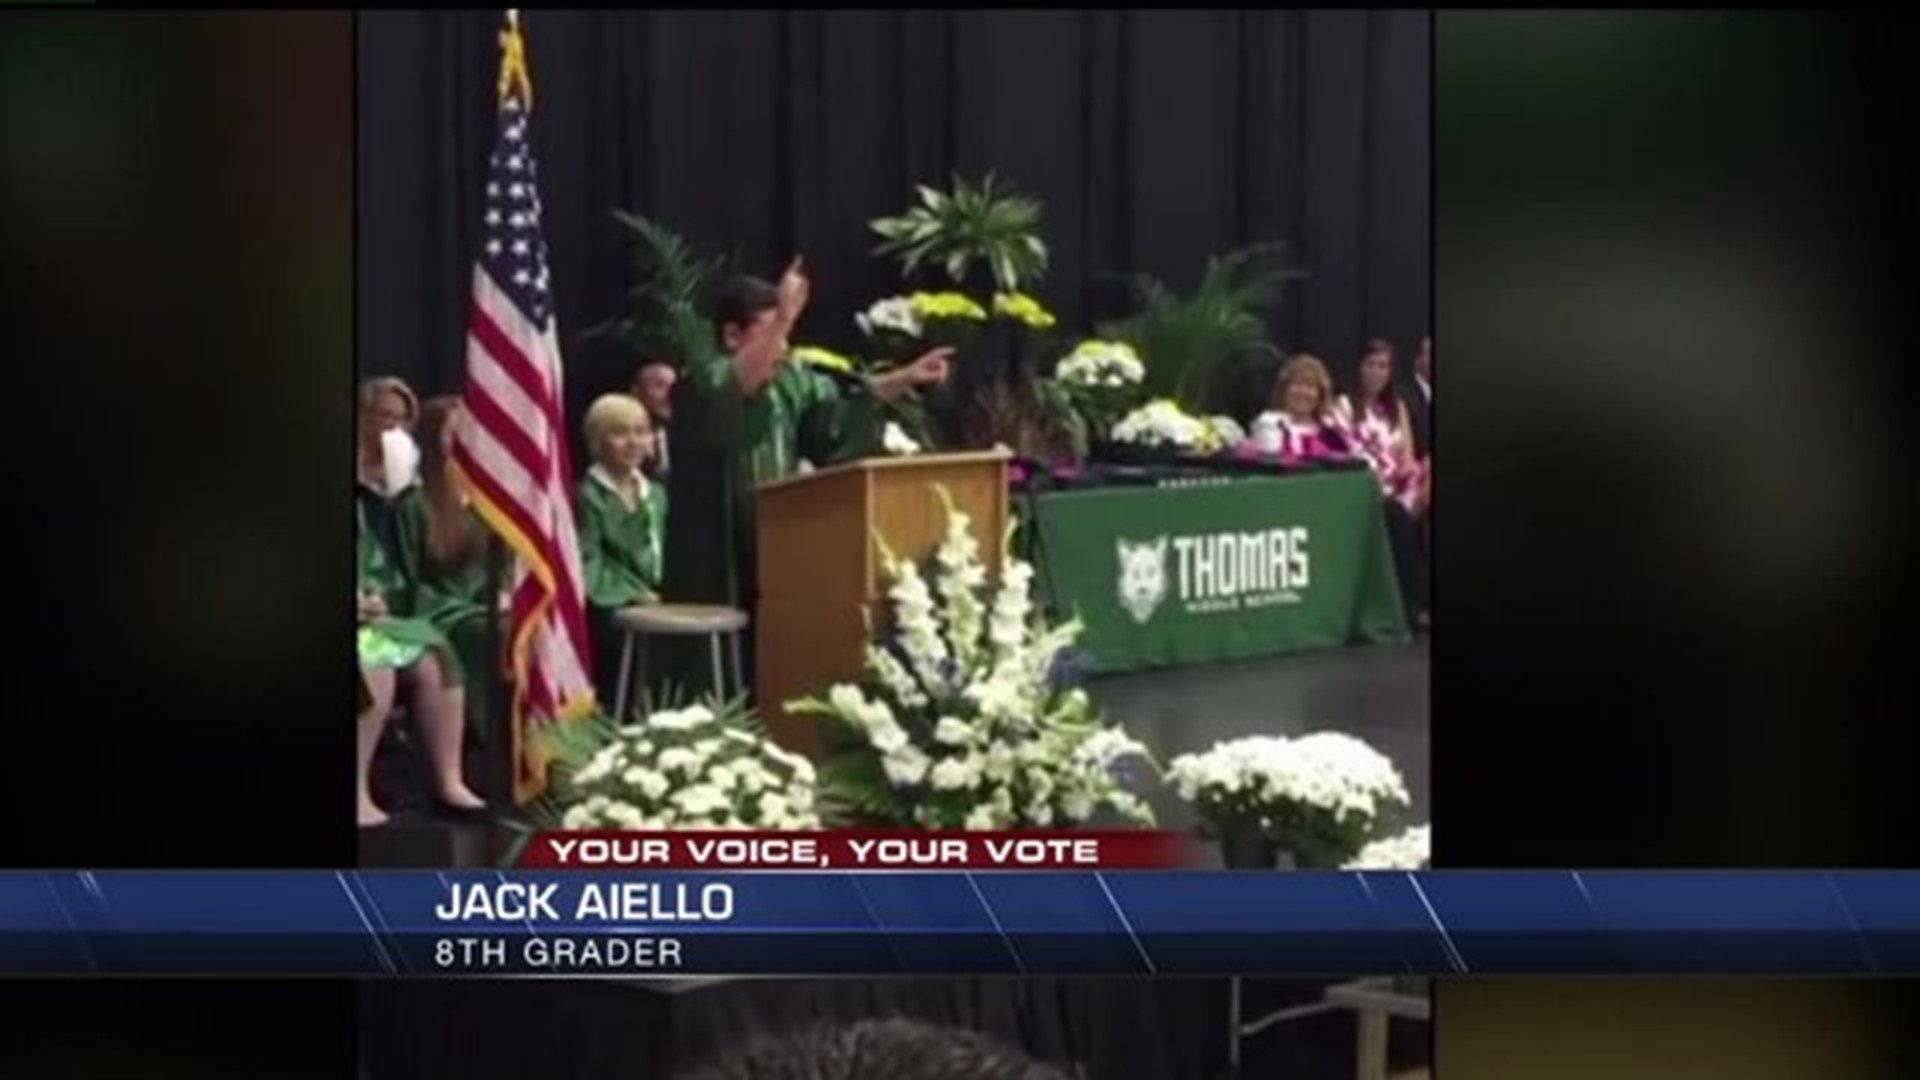 8th grade speech goes viral